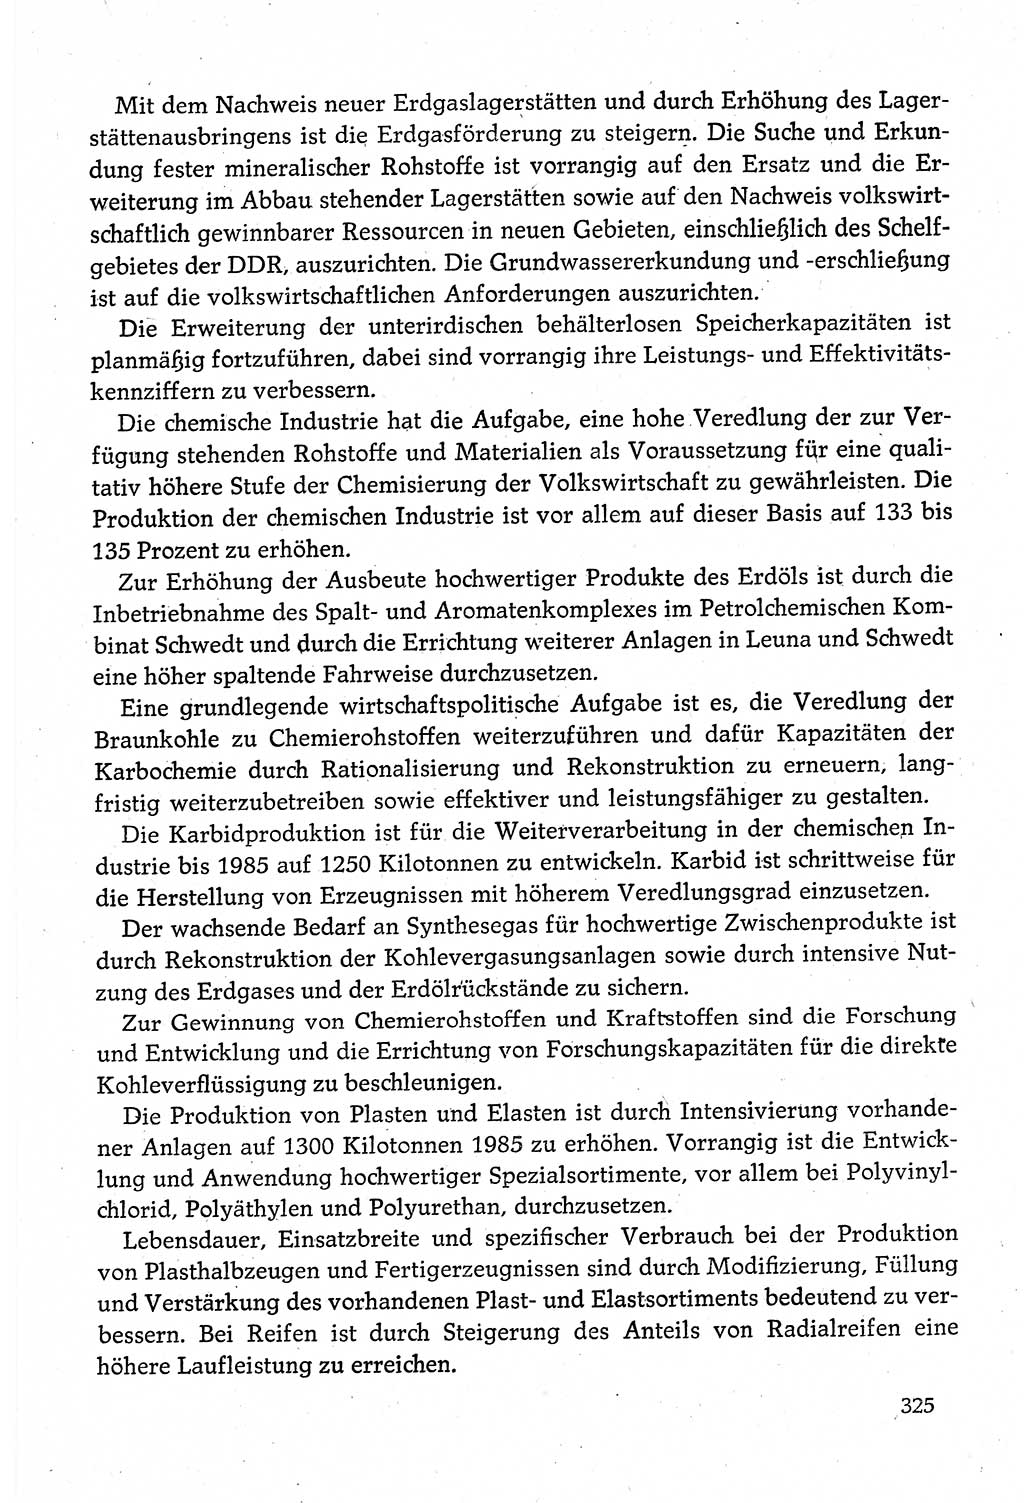 Dokumente der Sozialistischen Einheitspartei Deutschlands (SED) [Deutsche Demokratische Republik (DDR)] 1980-1981, Seite 325 (Dok. SED DDR 1980-1981, S. 325)